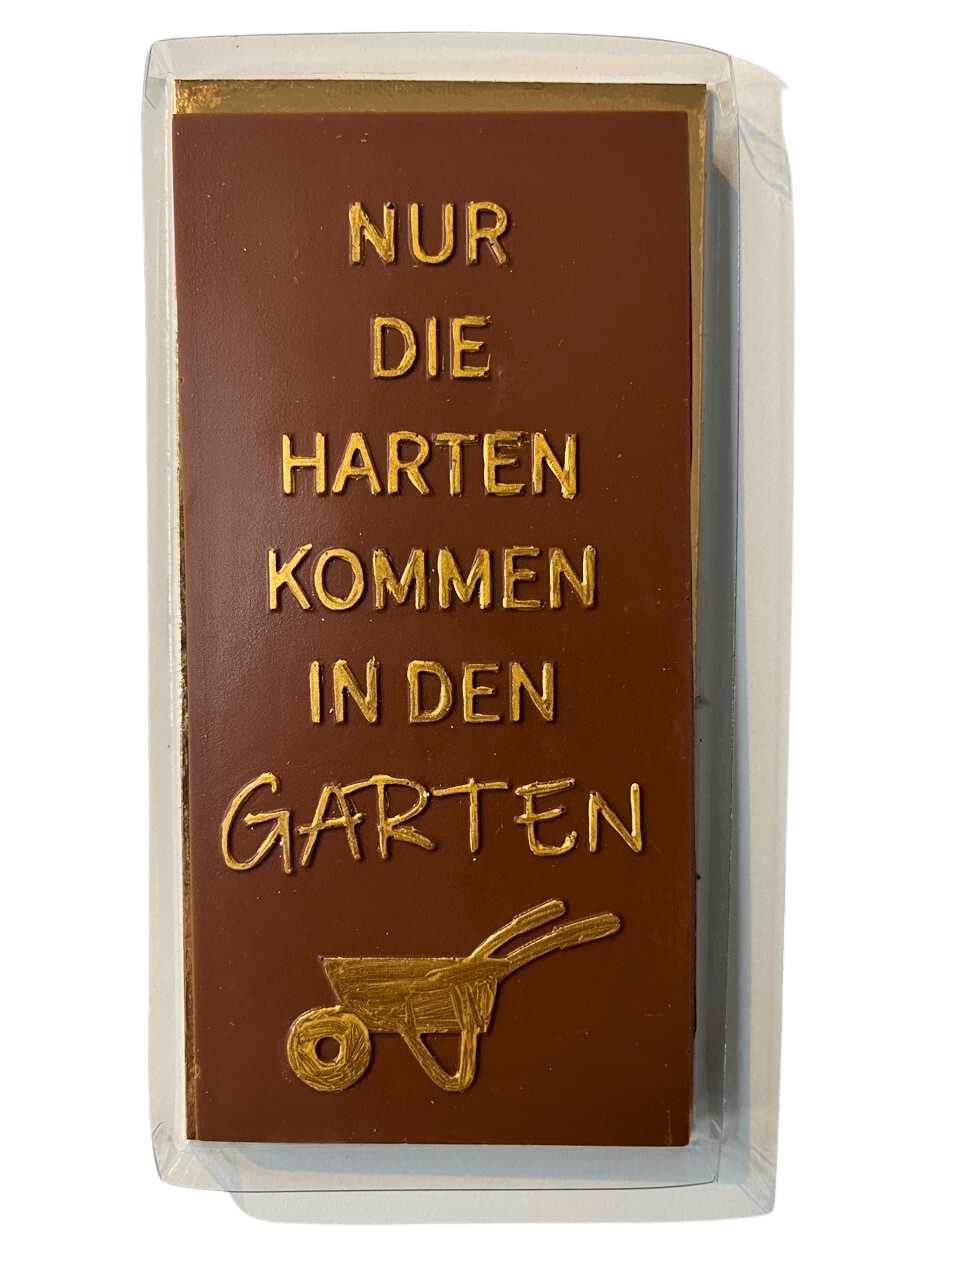 Tafel Vollmilch-Schokolade "Nur die Harten kommen in den Garten"